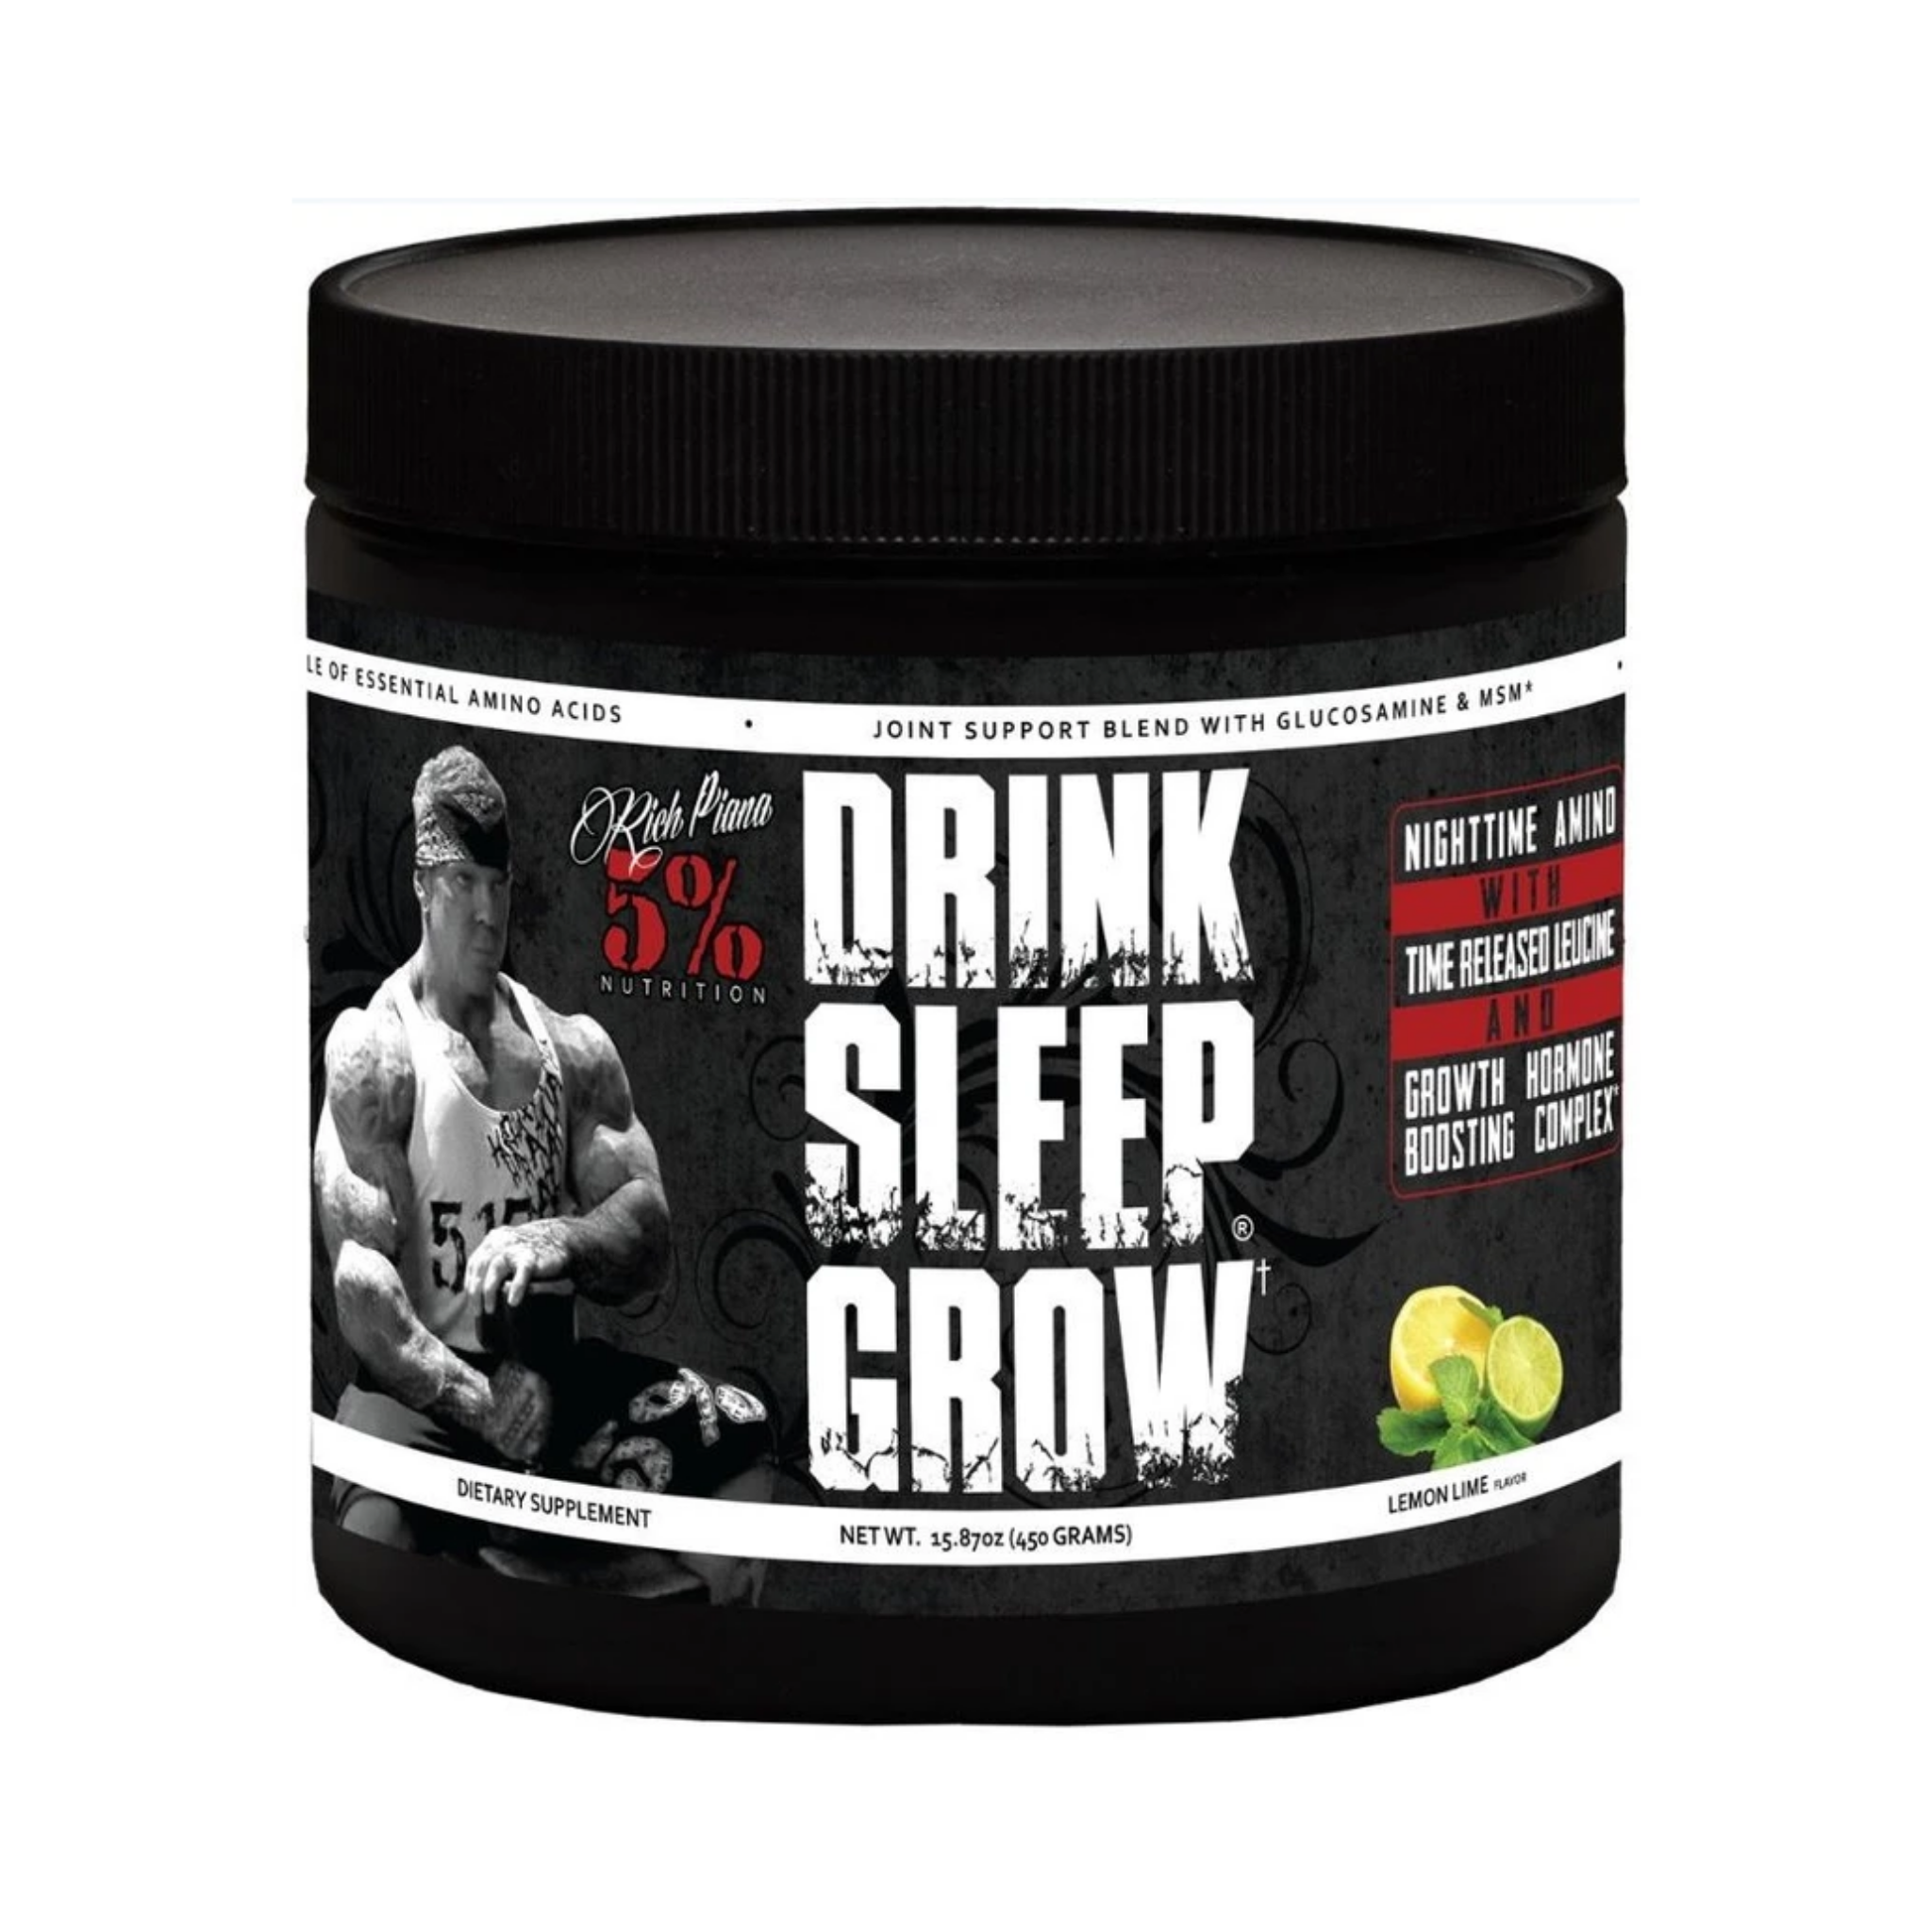 5% Nutrition Drink Sleep Grow Night Time Aminos